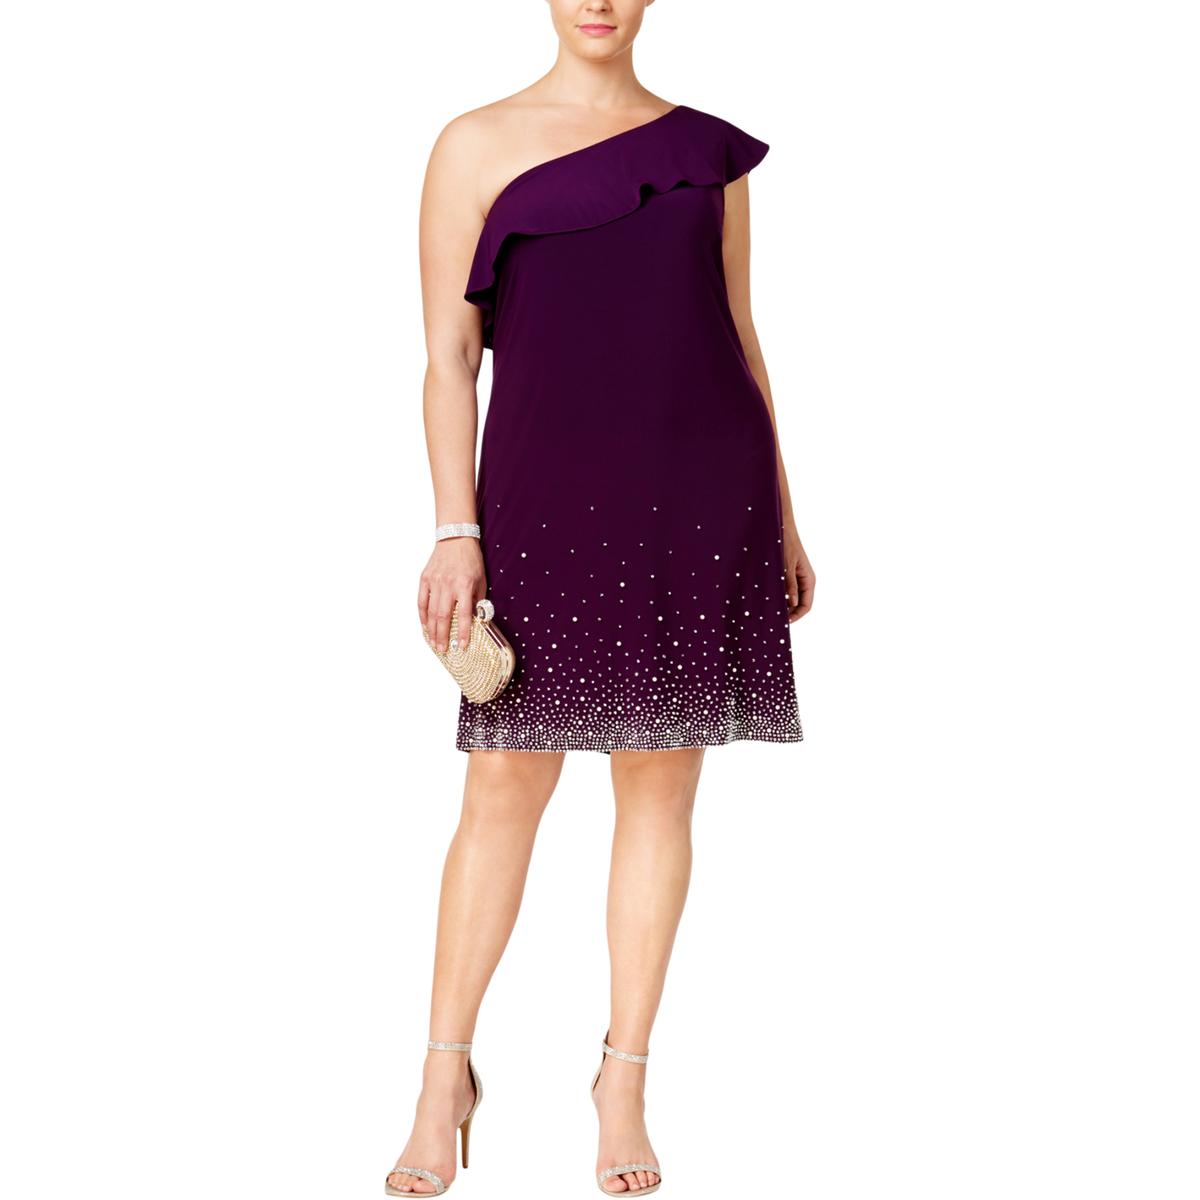 MSK Women Womens Purple Party Club Wear Cocktail Dress Plus 1X BHFO ...